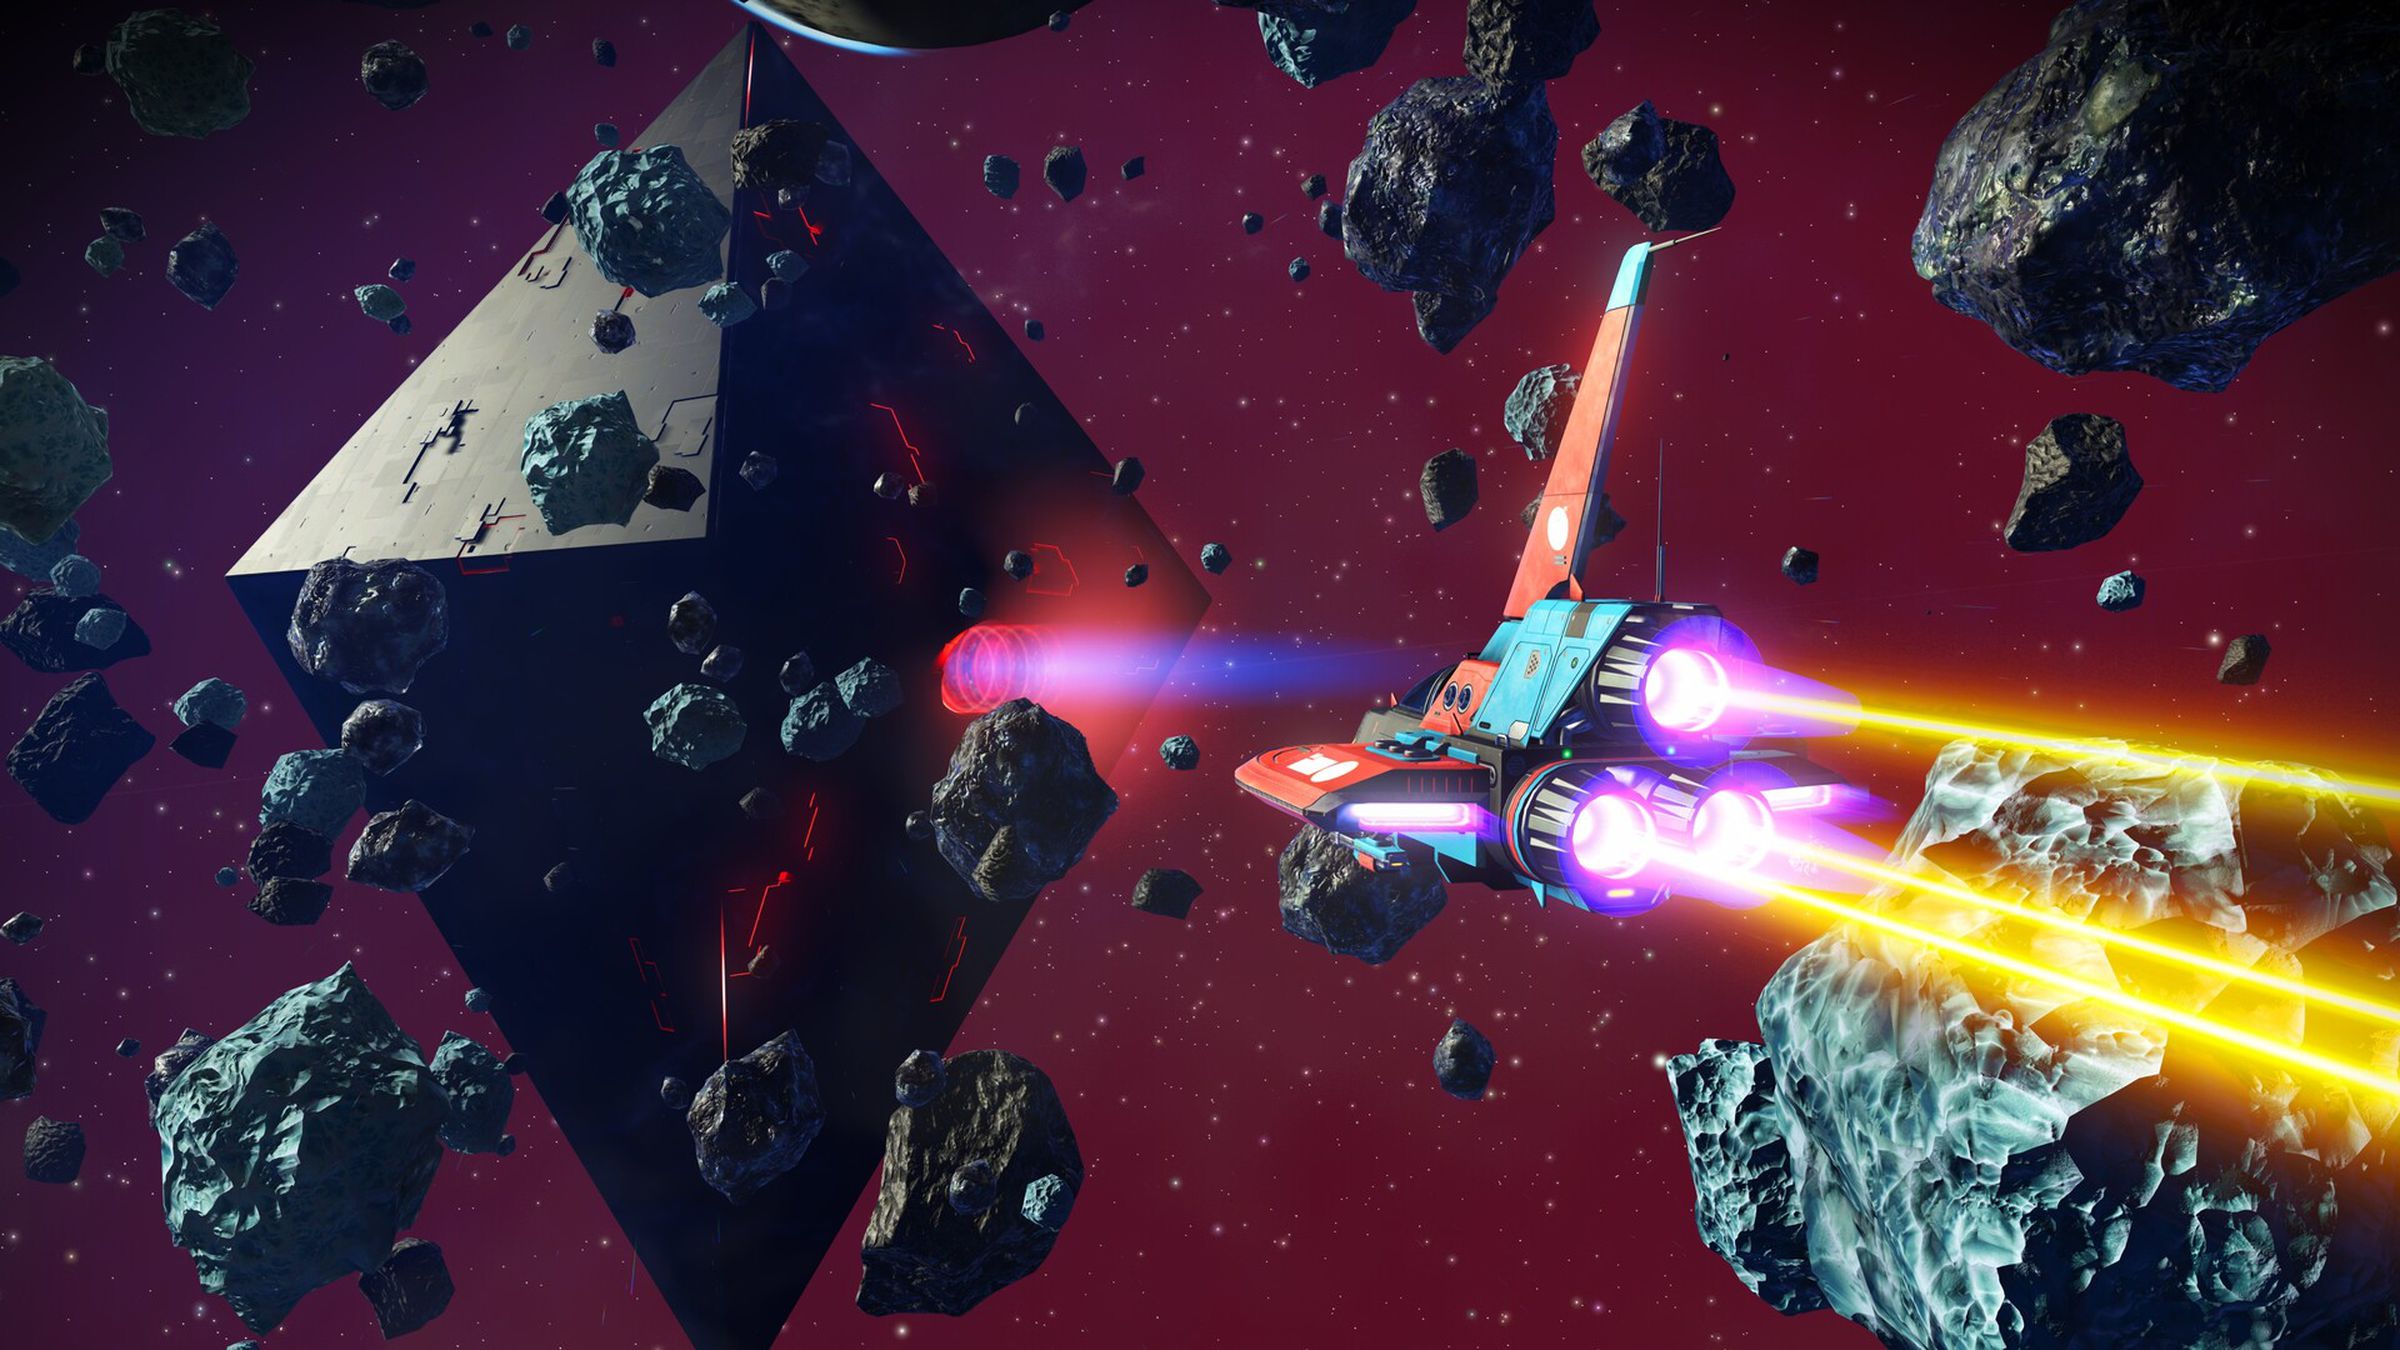 Una nave espacial lanzando una gran roca espacial contra un fondo violeta.